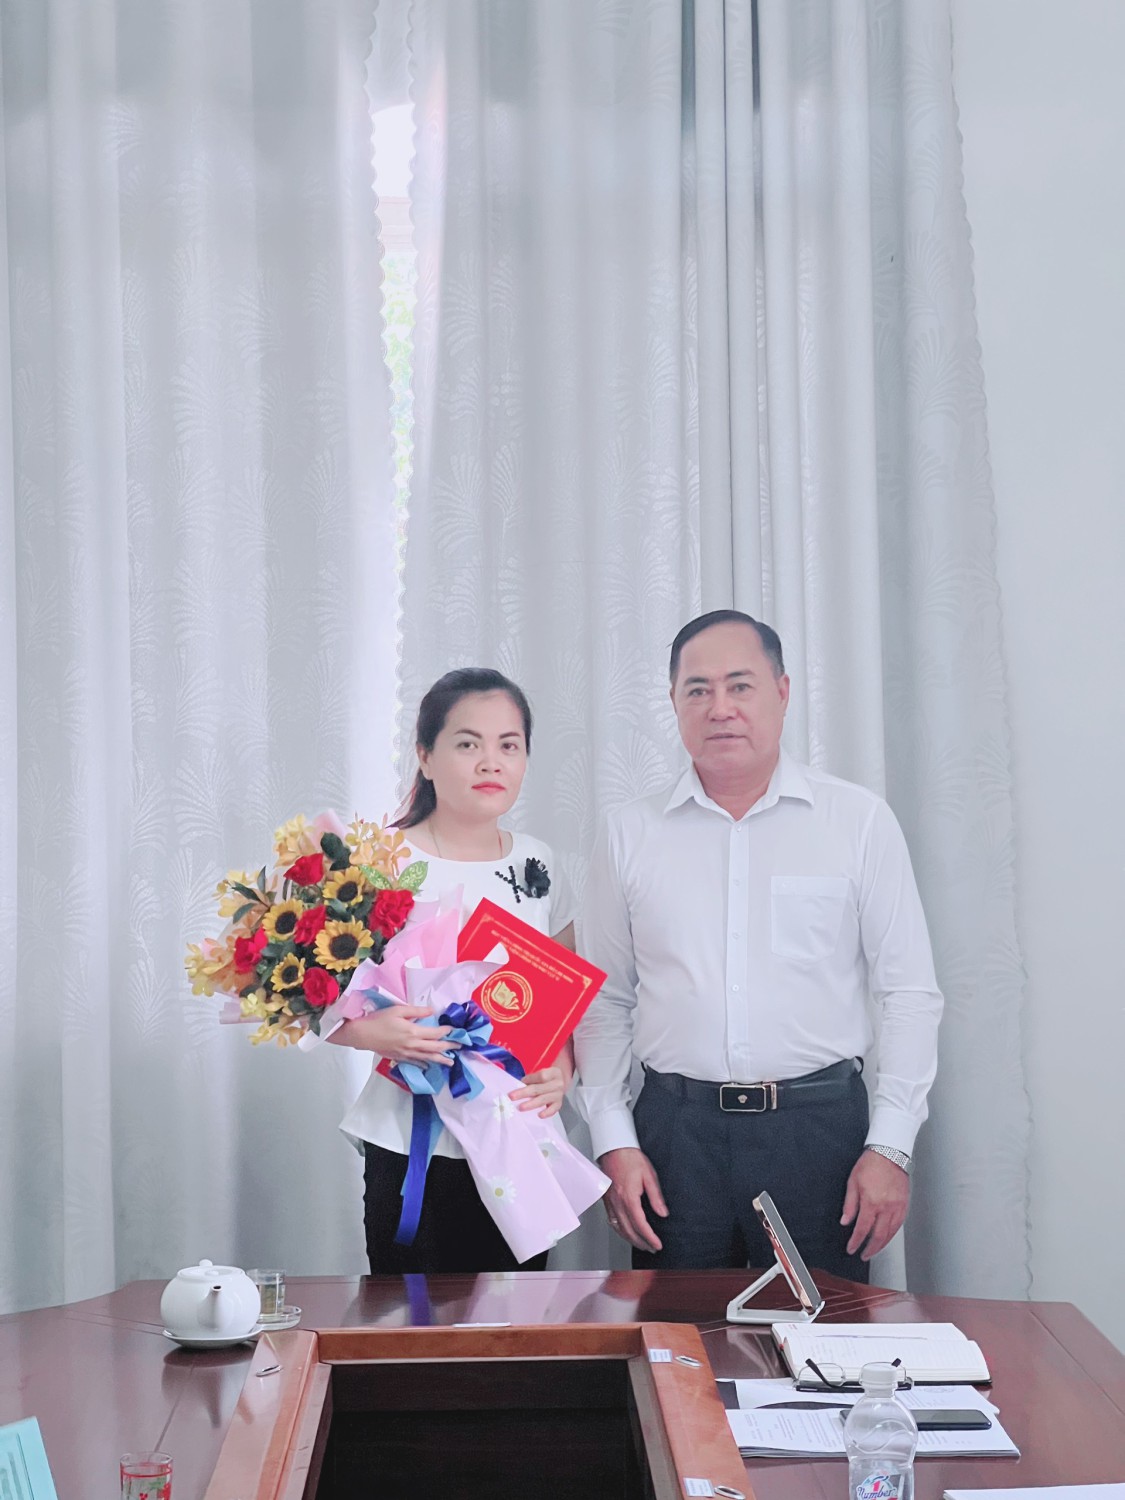 Ông Nguyễn Văn Hồng – Giám đốc Sở Ngoại vụ trao quyết định và hoa cho đồng chí Vũ Thị Thanh Tâm.